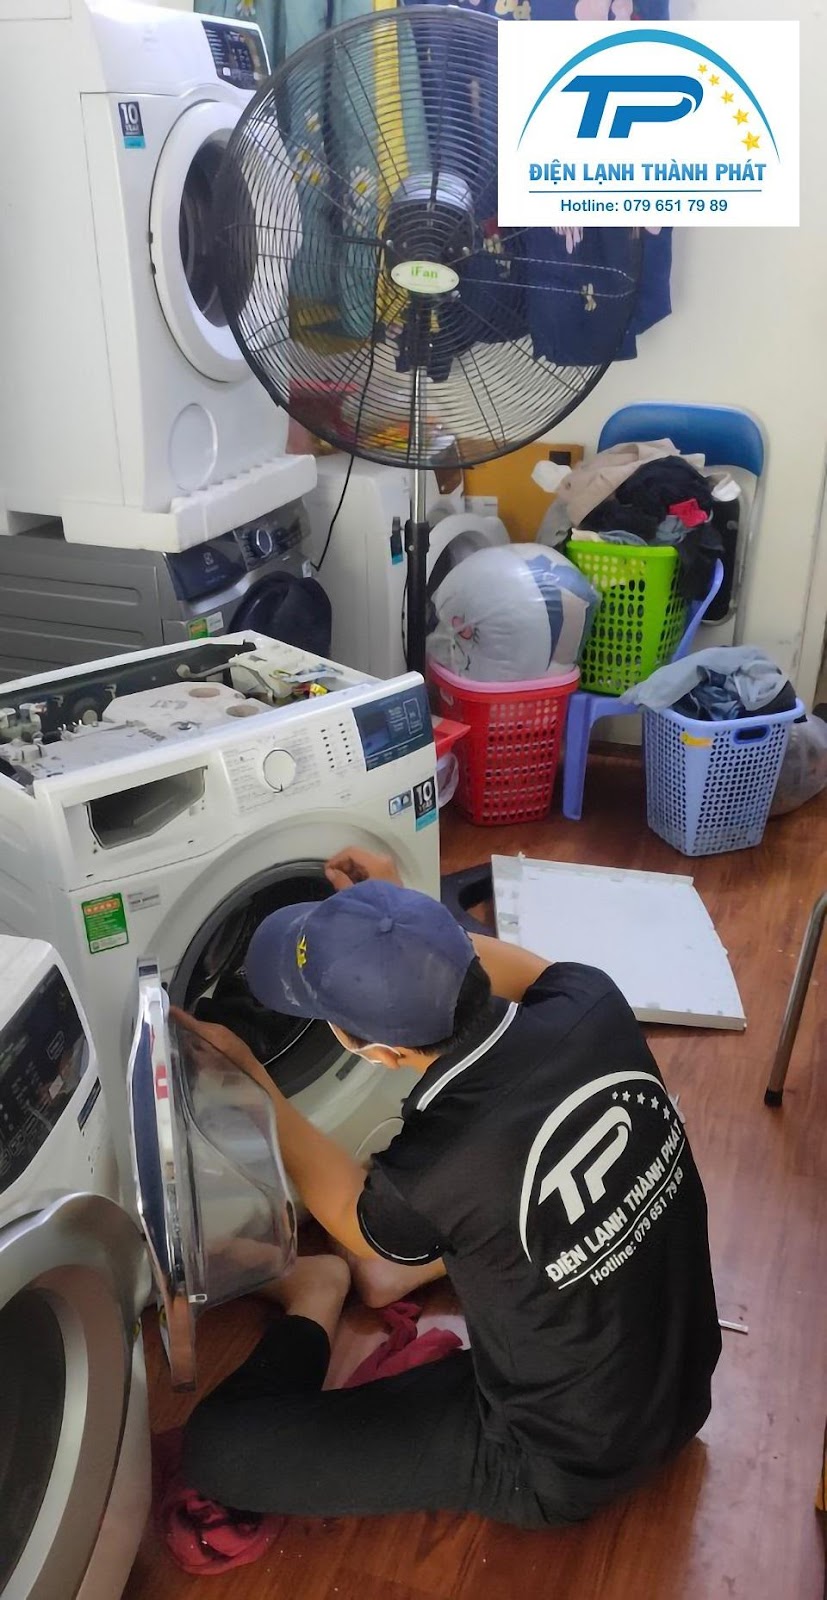 Dịch vụ vệ sinh máy giặt Điện lạnh Thành Phát có báo giá vô cùng hấp dẫn.